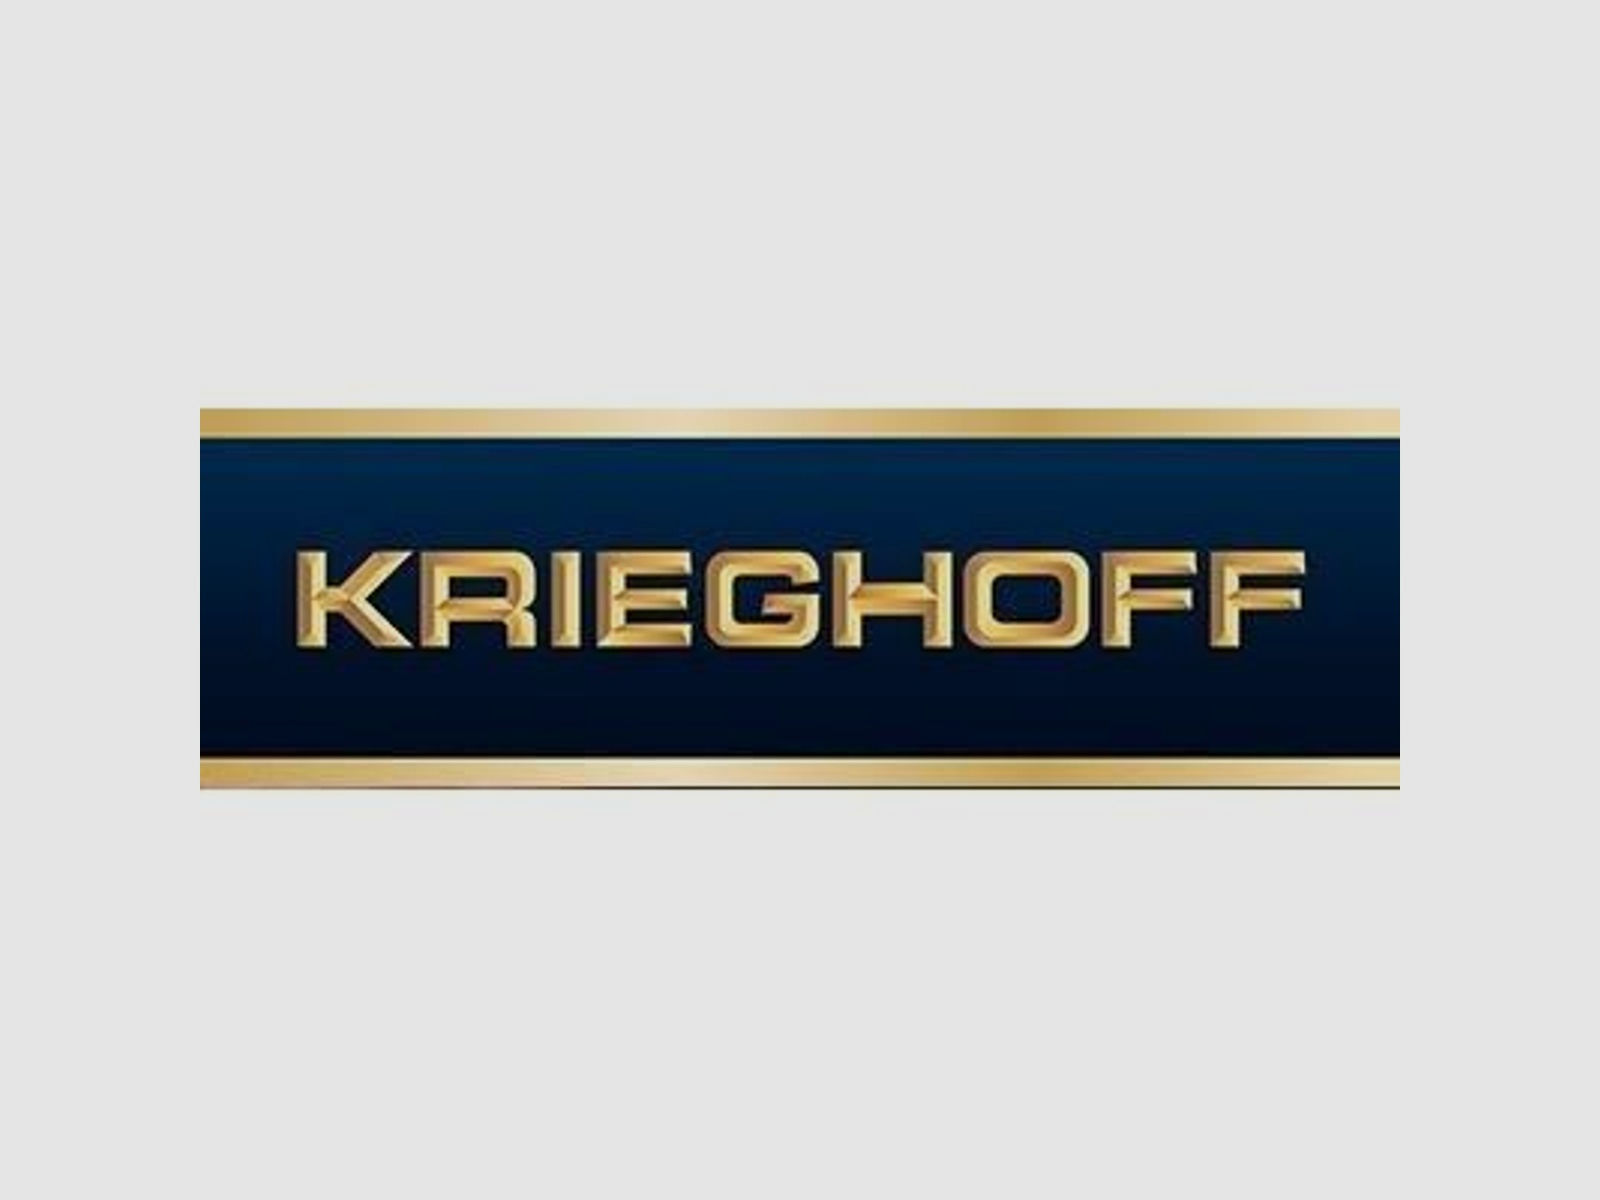 KRIEGHOFF Mehrpreis für Neuwaffe Schaftholz #1 - Mehrpreis Optima-Ultra-Classic-Hubertus